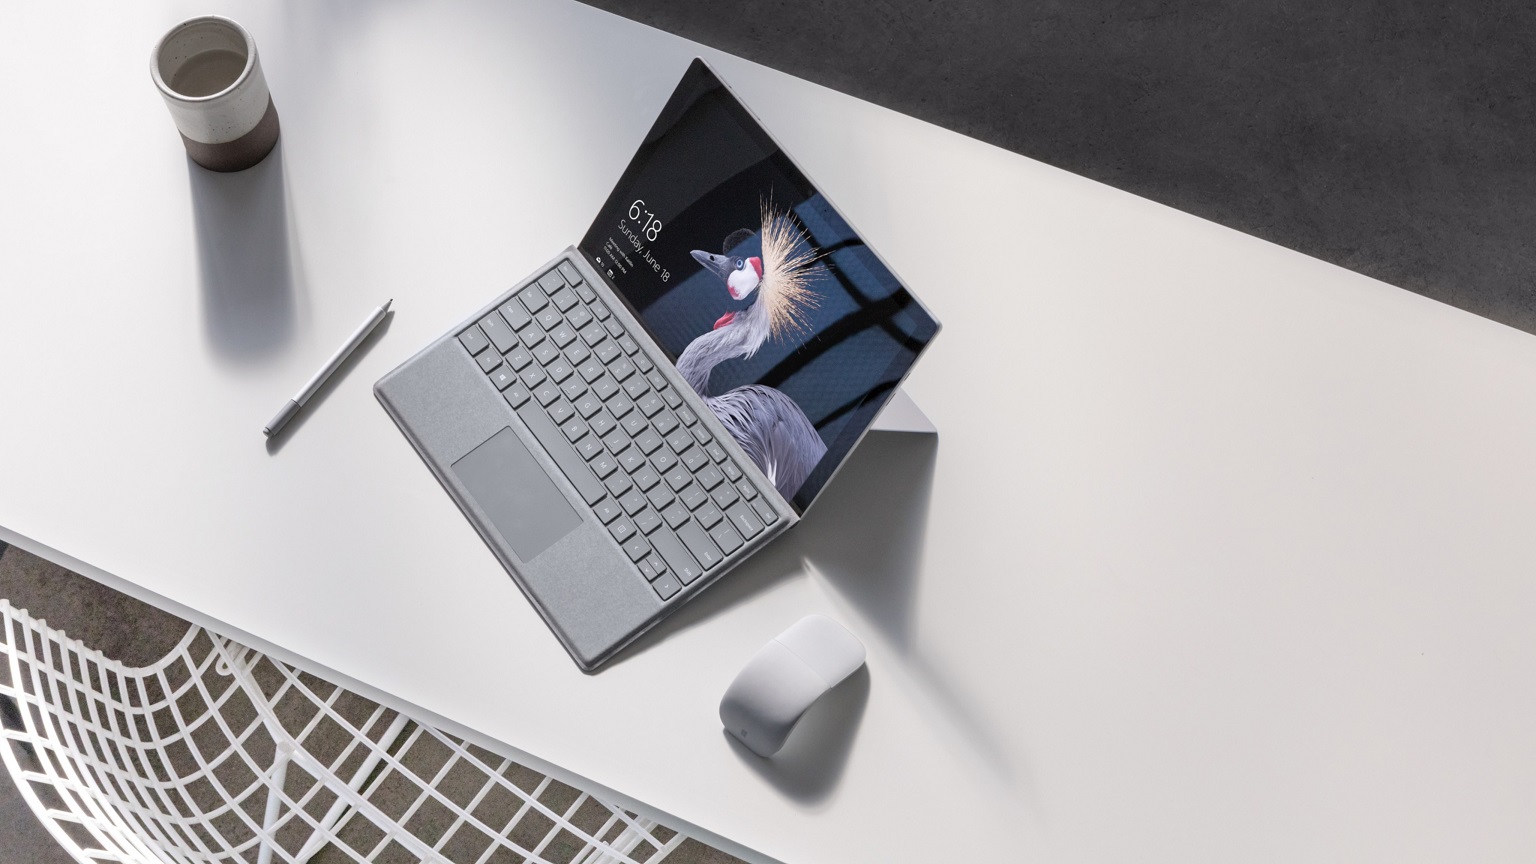 Microsoft Surface bán rất chạy, doanh thu hơn 1.3 tỉ USD trong Q3